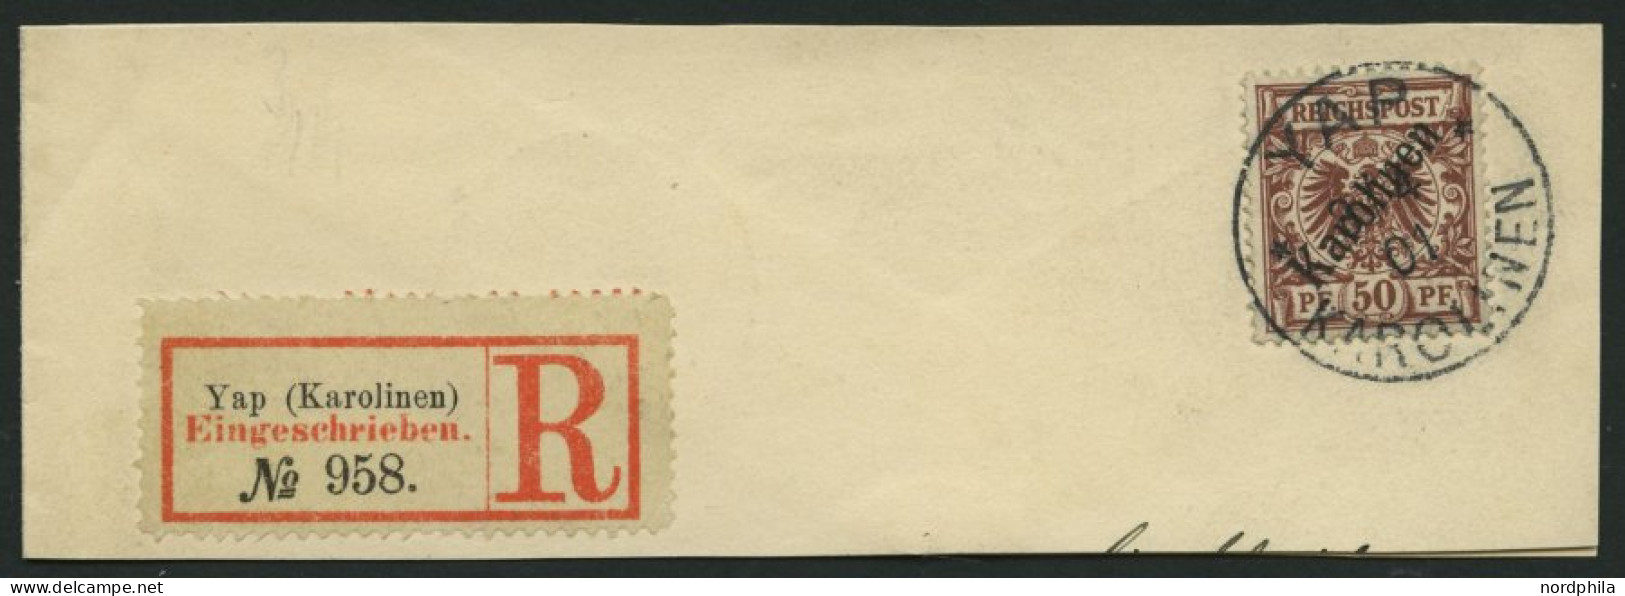 KAROLINEN 6I BrfStk, 1899, 50 Pf. Diagonaler Aufdruck Auf Großem Briefteil Mit R-Zettel, Kabinett, Fotoattest Jäschke-L. - Carolines